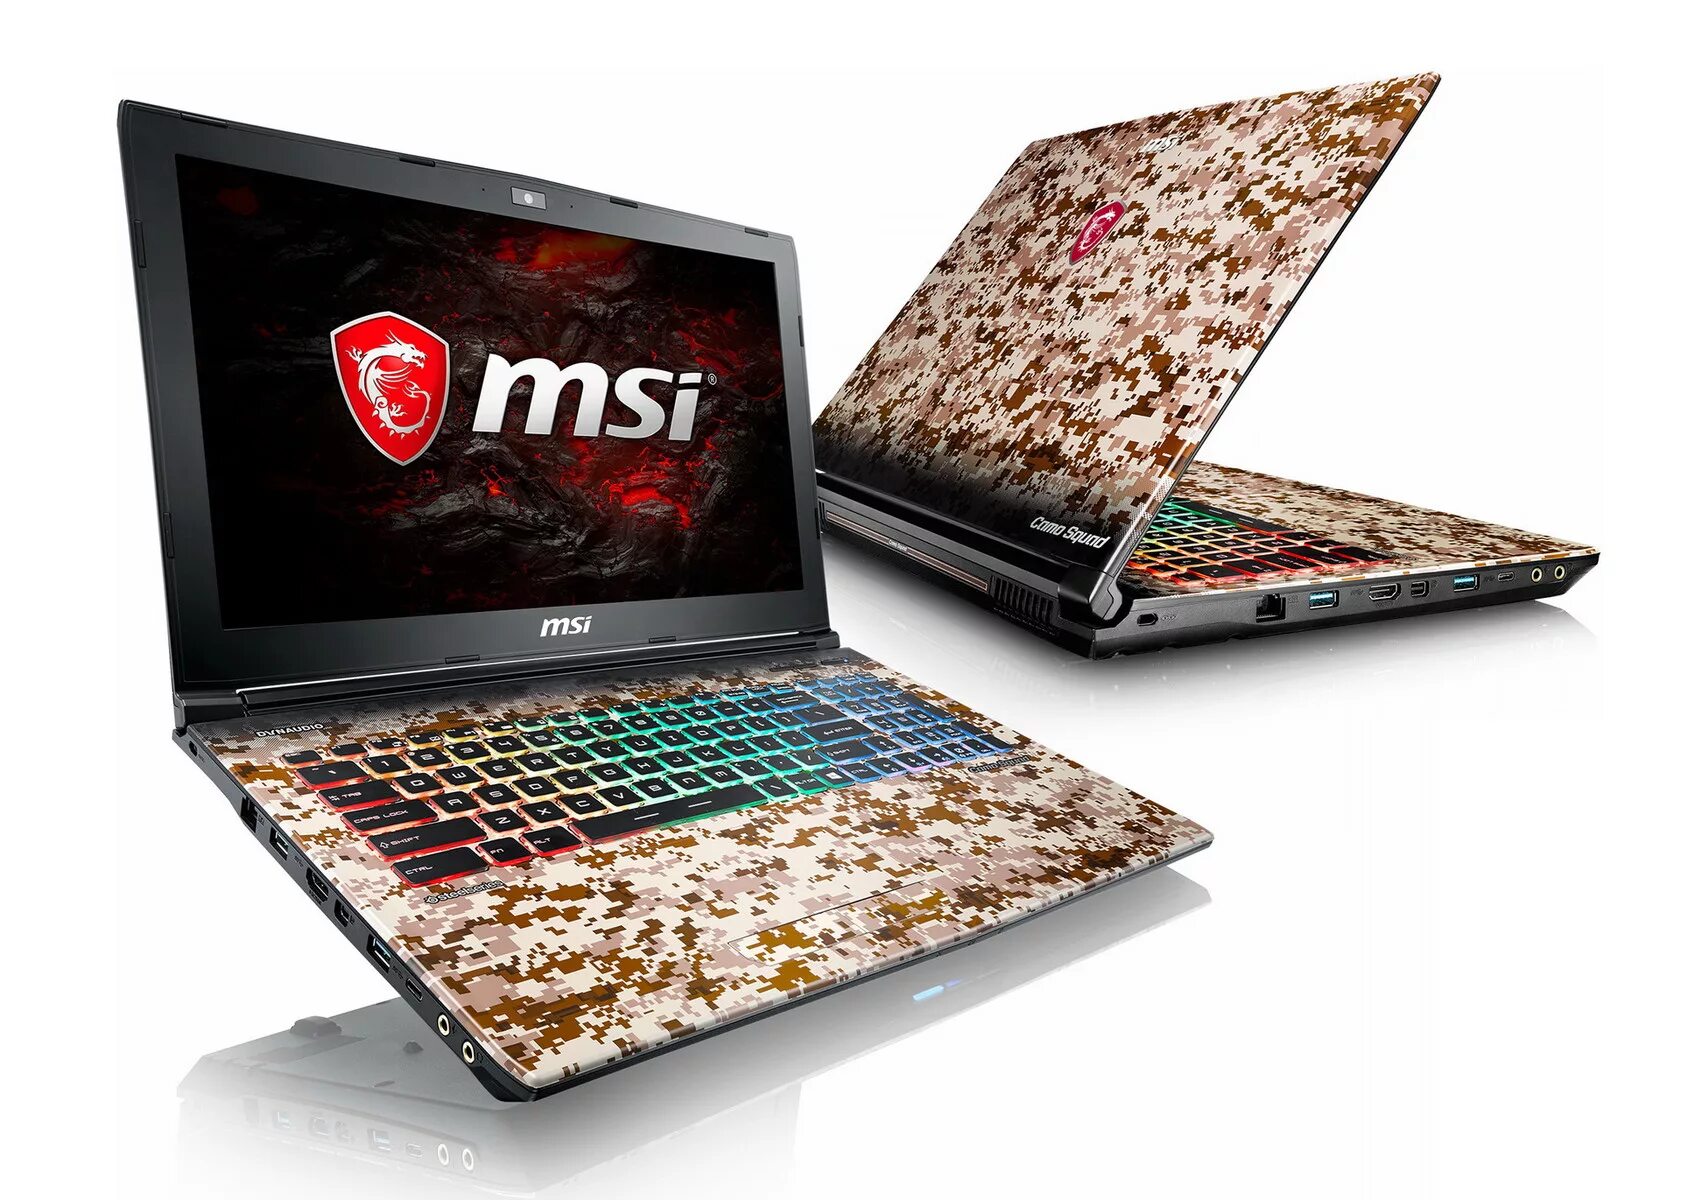 Ноутбук MSI ge62. Игровой ноутбук MSI 1050ti. MSI ge62 7re Camo Squad. Игровой ноутбук MSI 1050ti серебристый. Ноутбук для игр требования